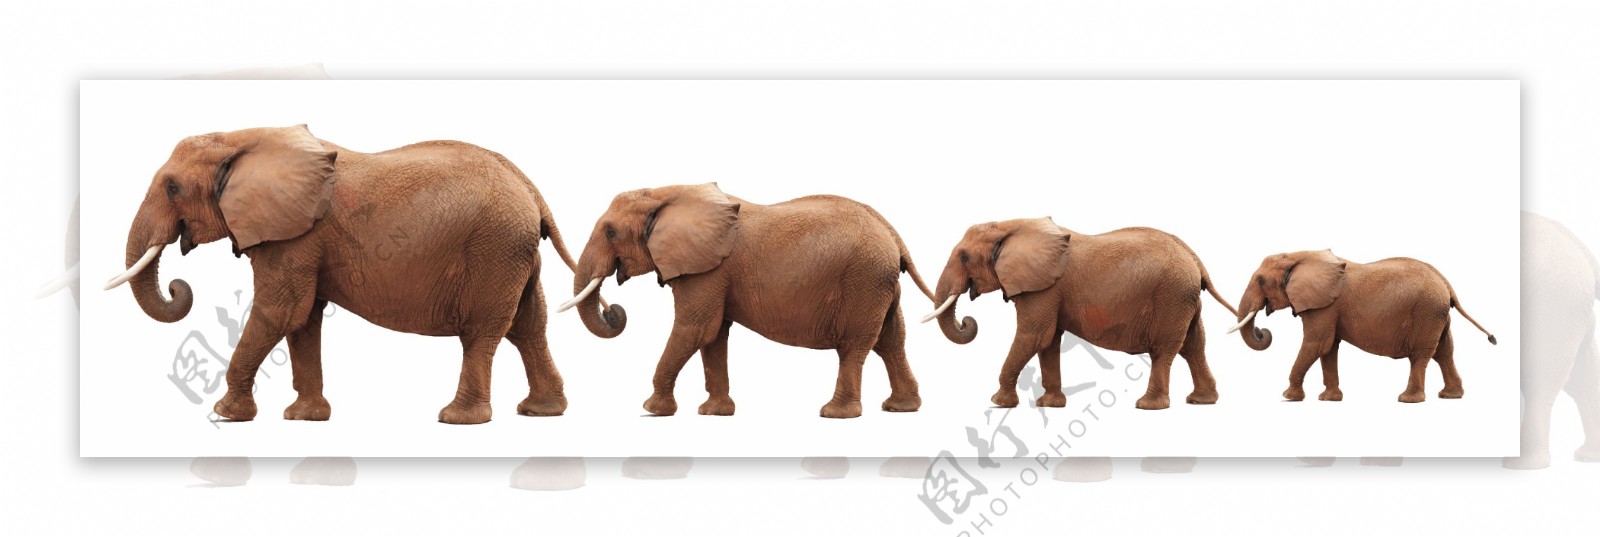 马戏团大象图片